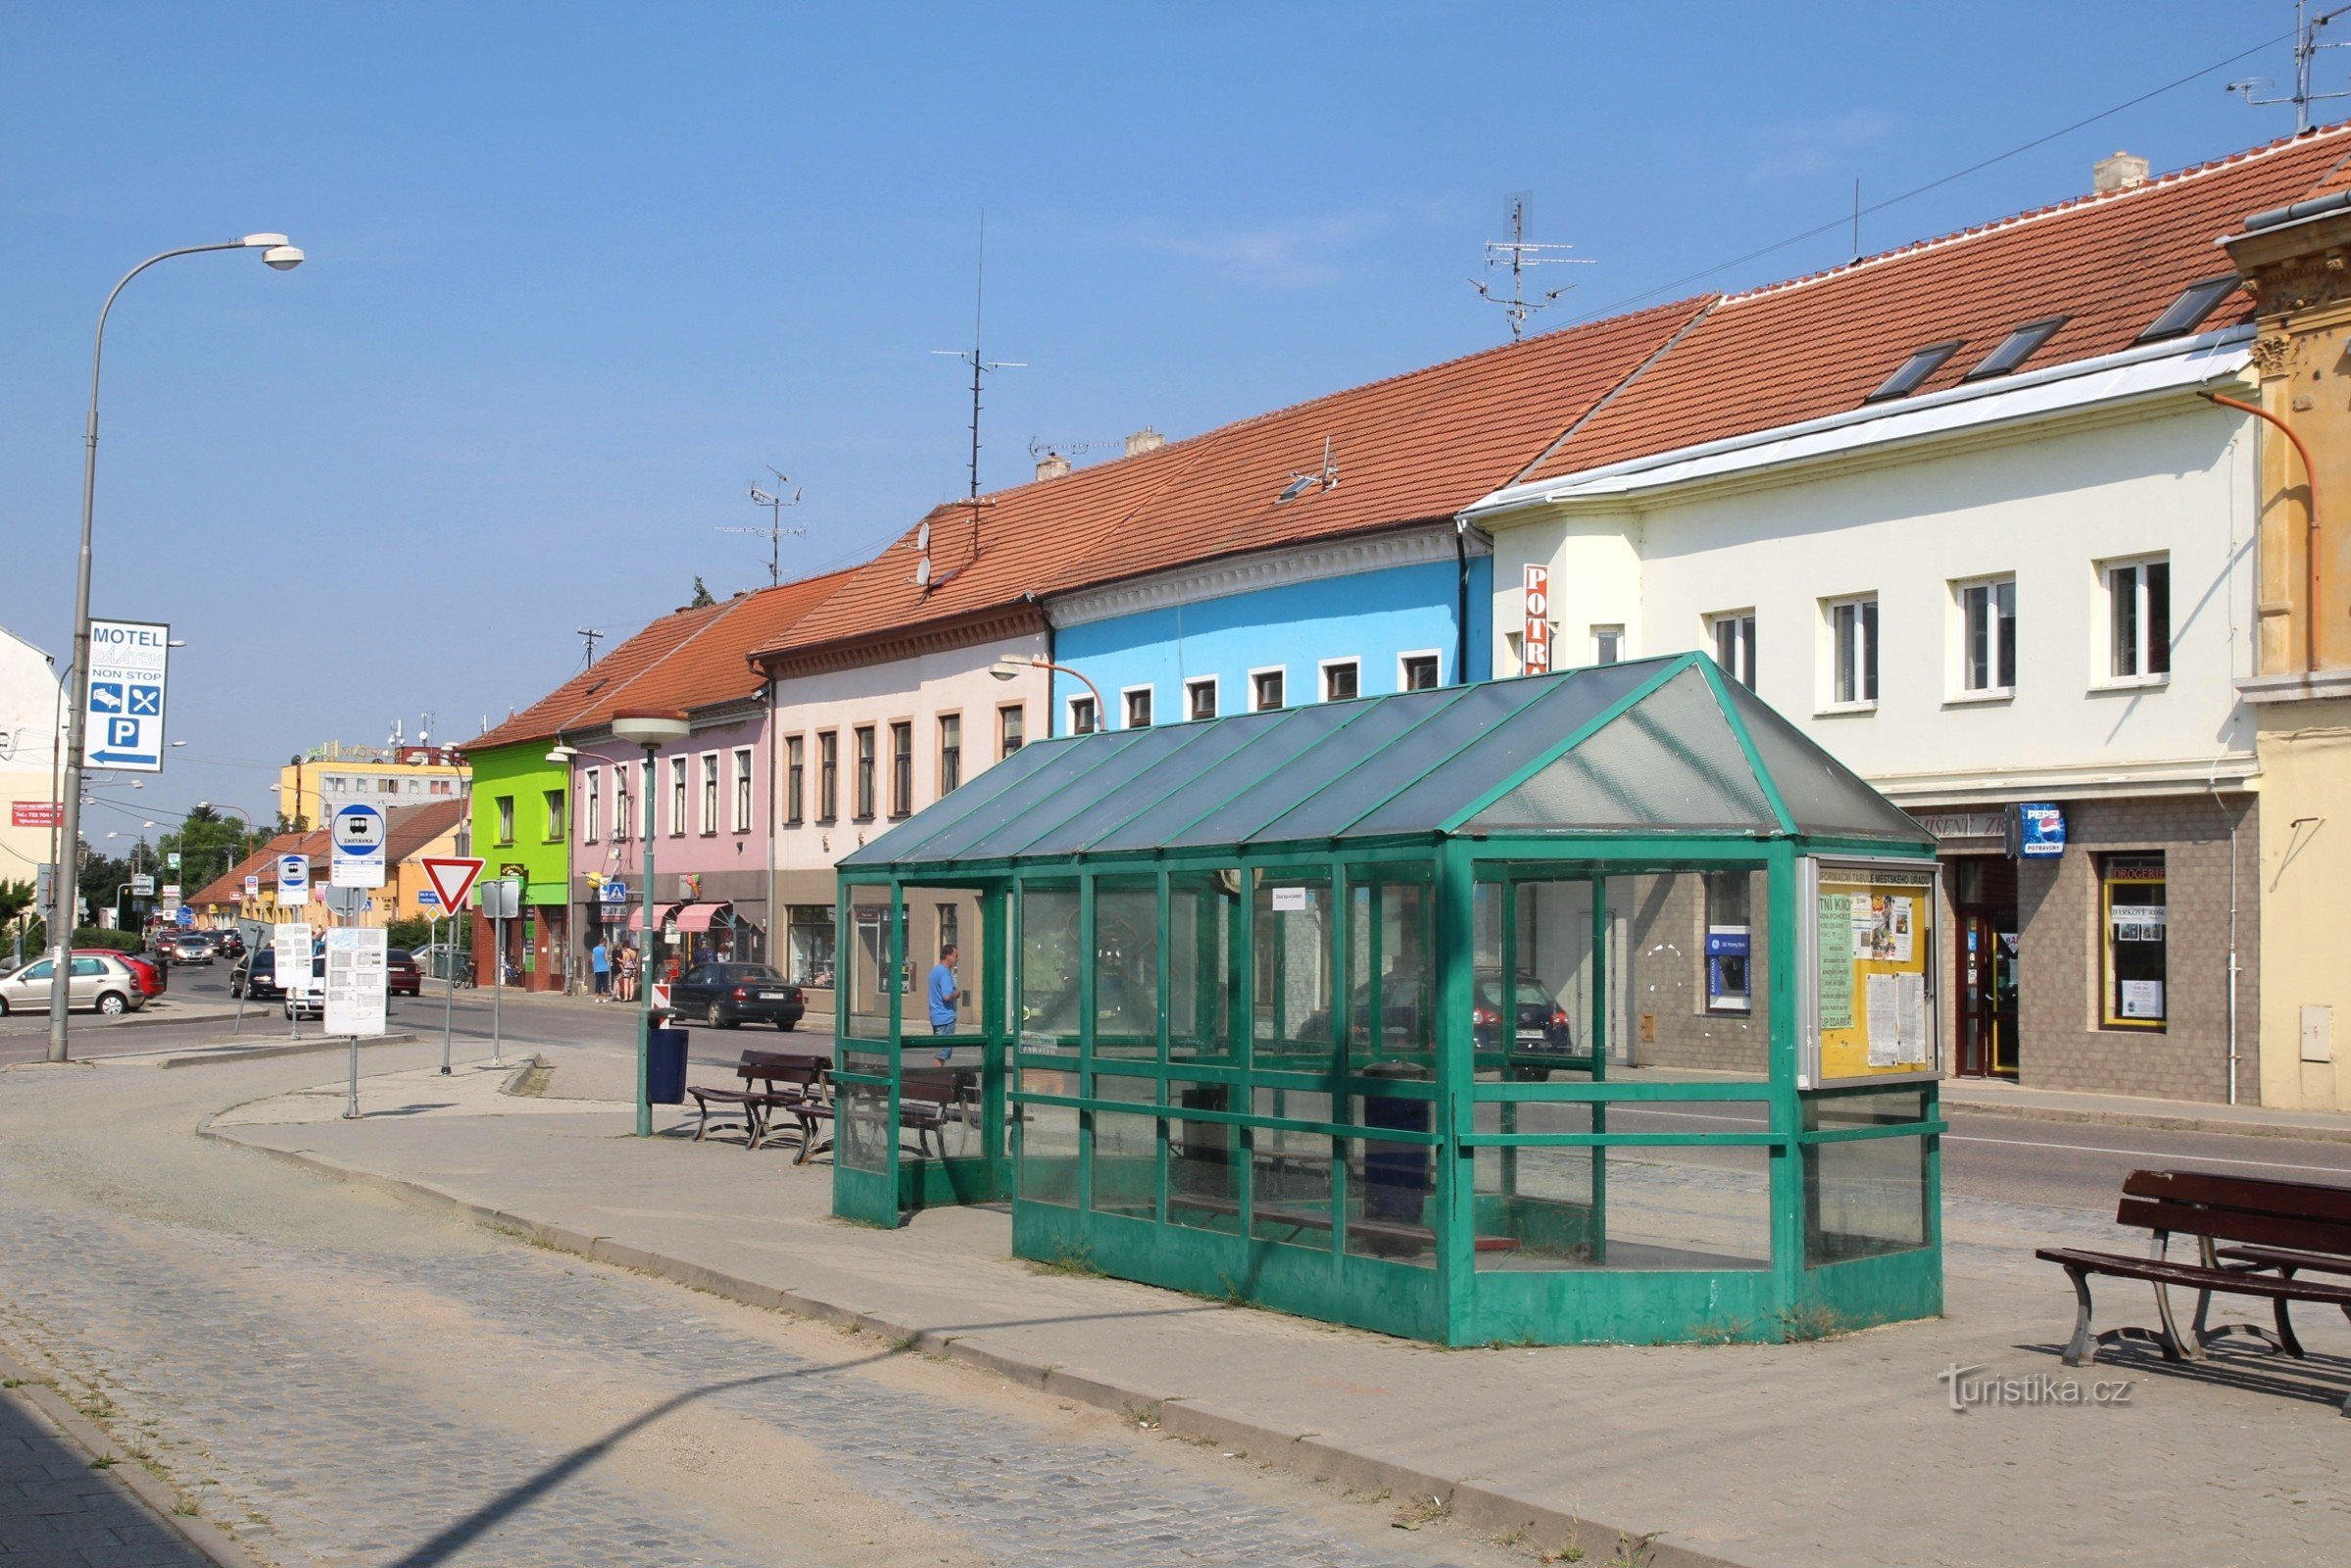 Pohořelická Lidická street with bus stops